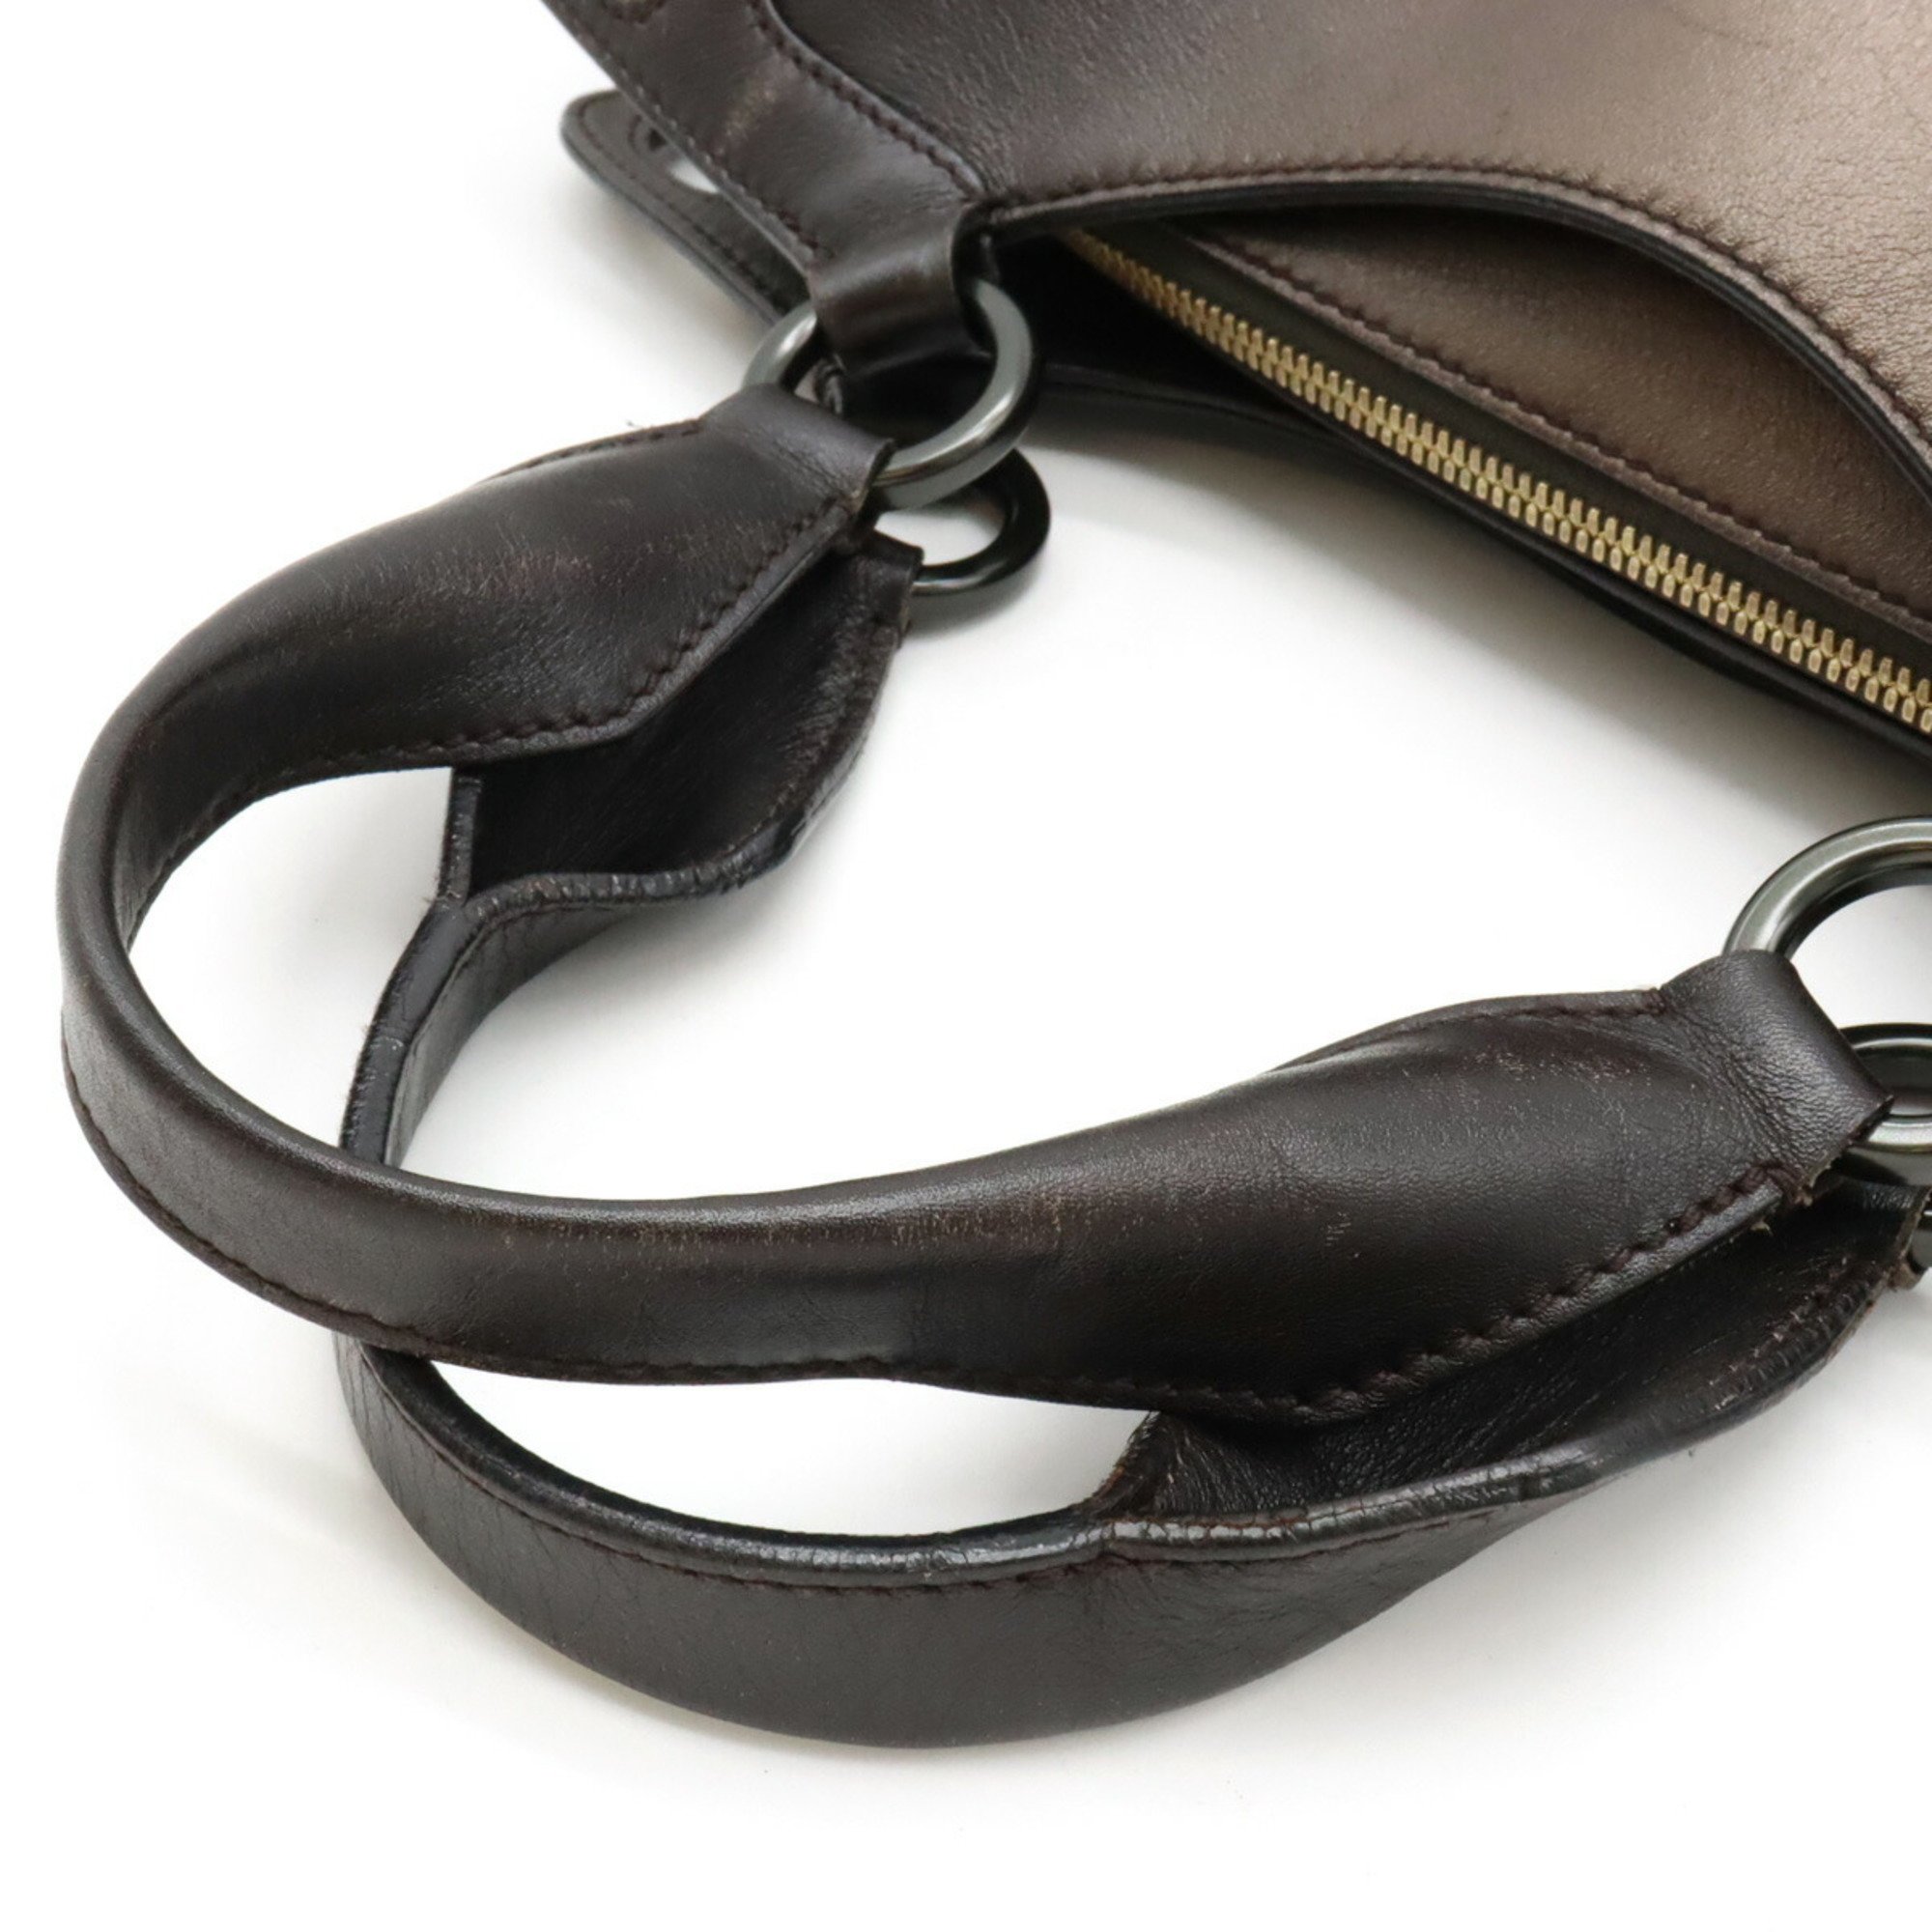 Cartier Marcello de handbag tote bag leather dark brown gradation